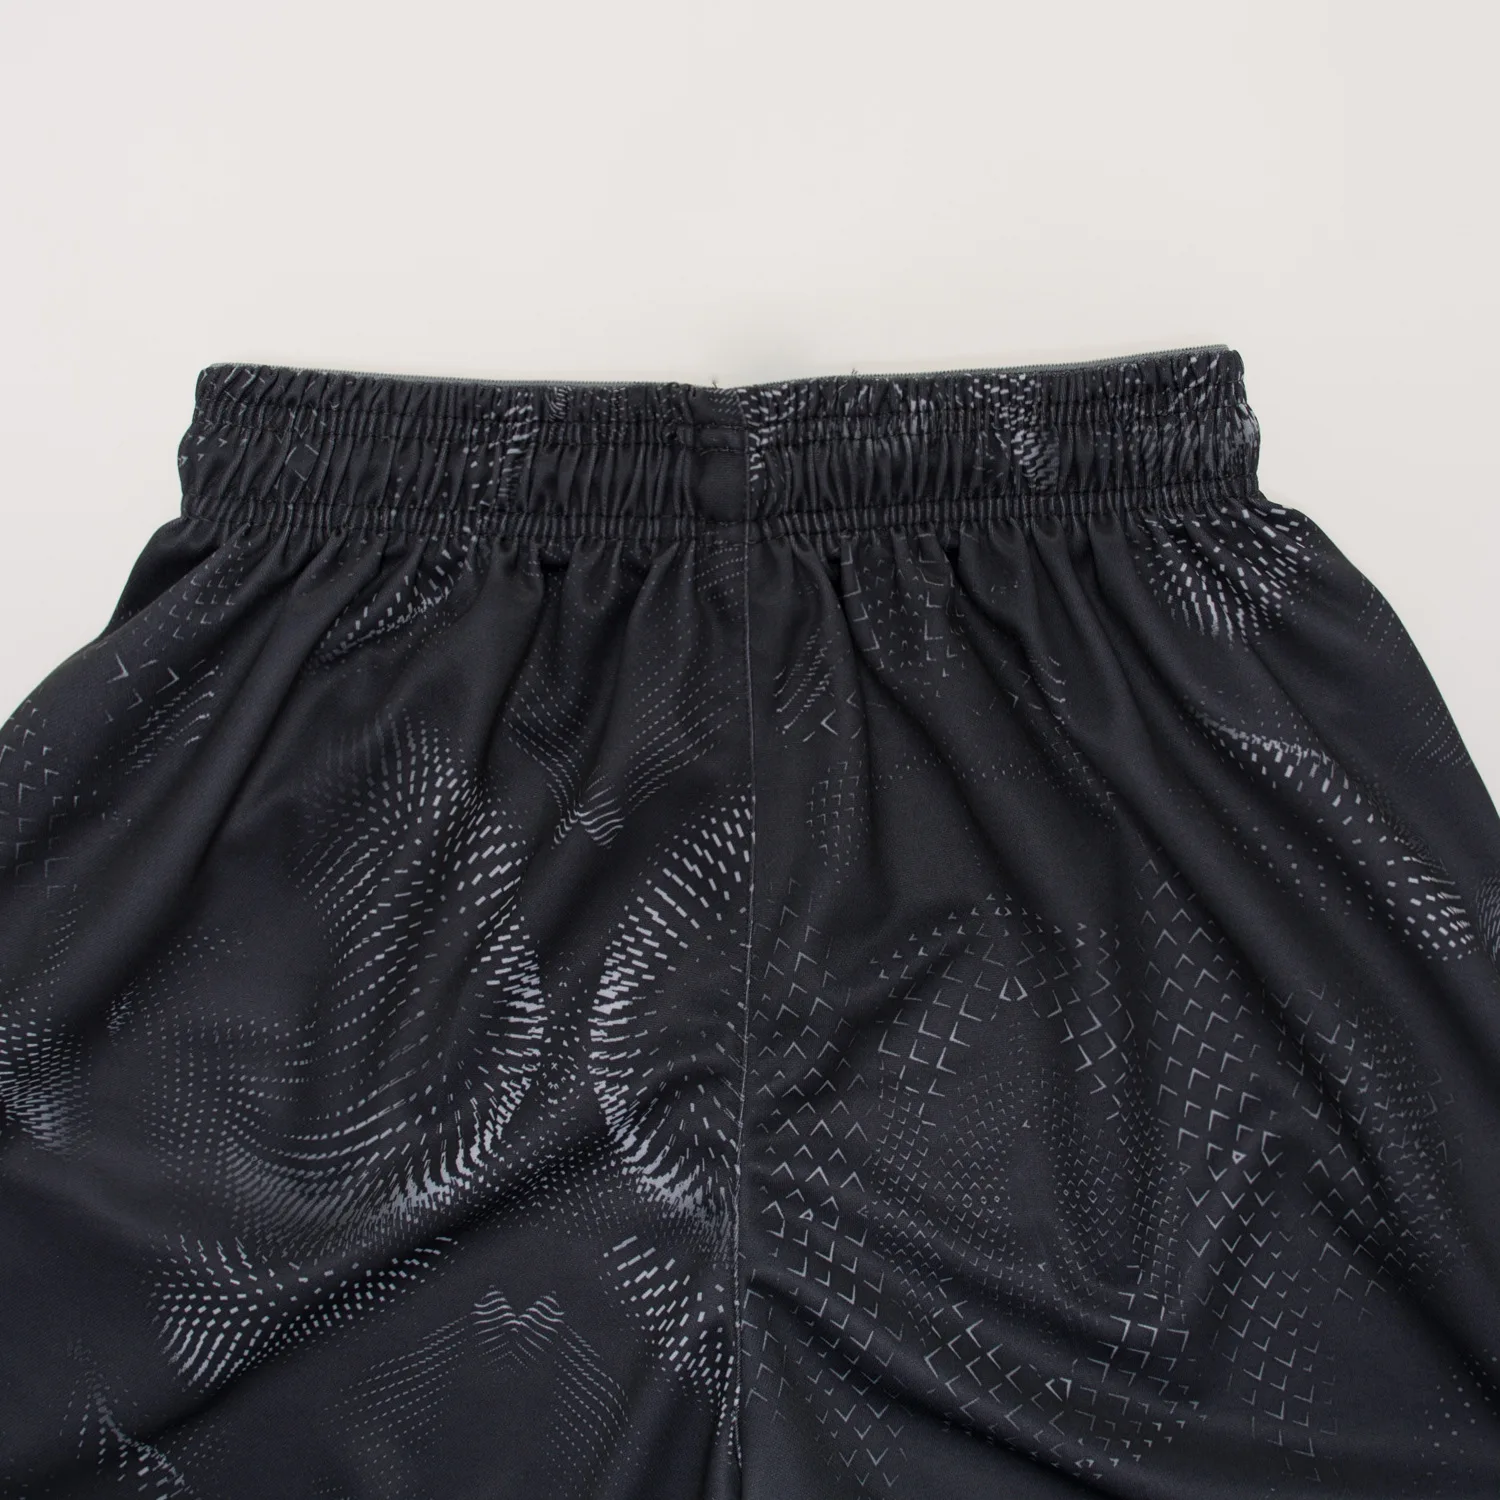 SYNSLOVE дизайн черный мамба обучение баскетбол Кобе змеиная живопись спортивные шорты свободные половина длины размера плюс с двойным карманом